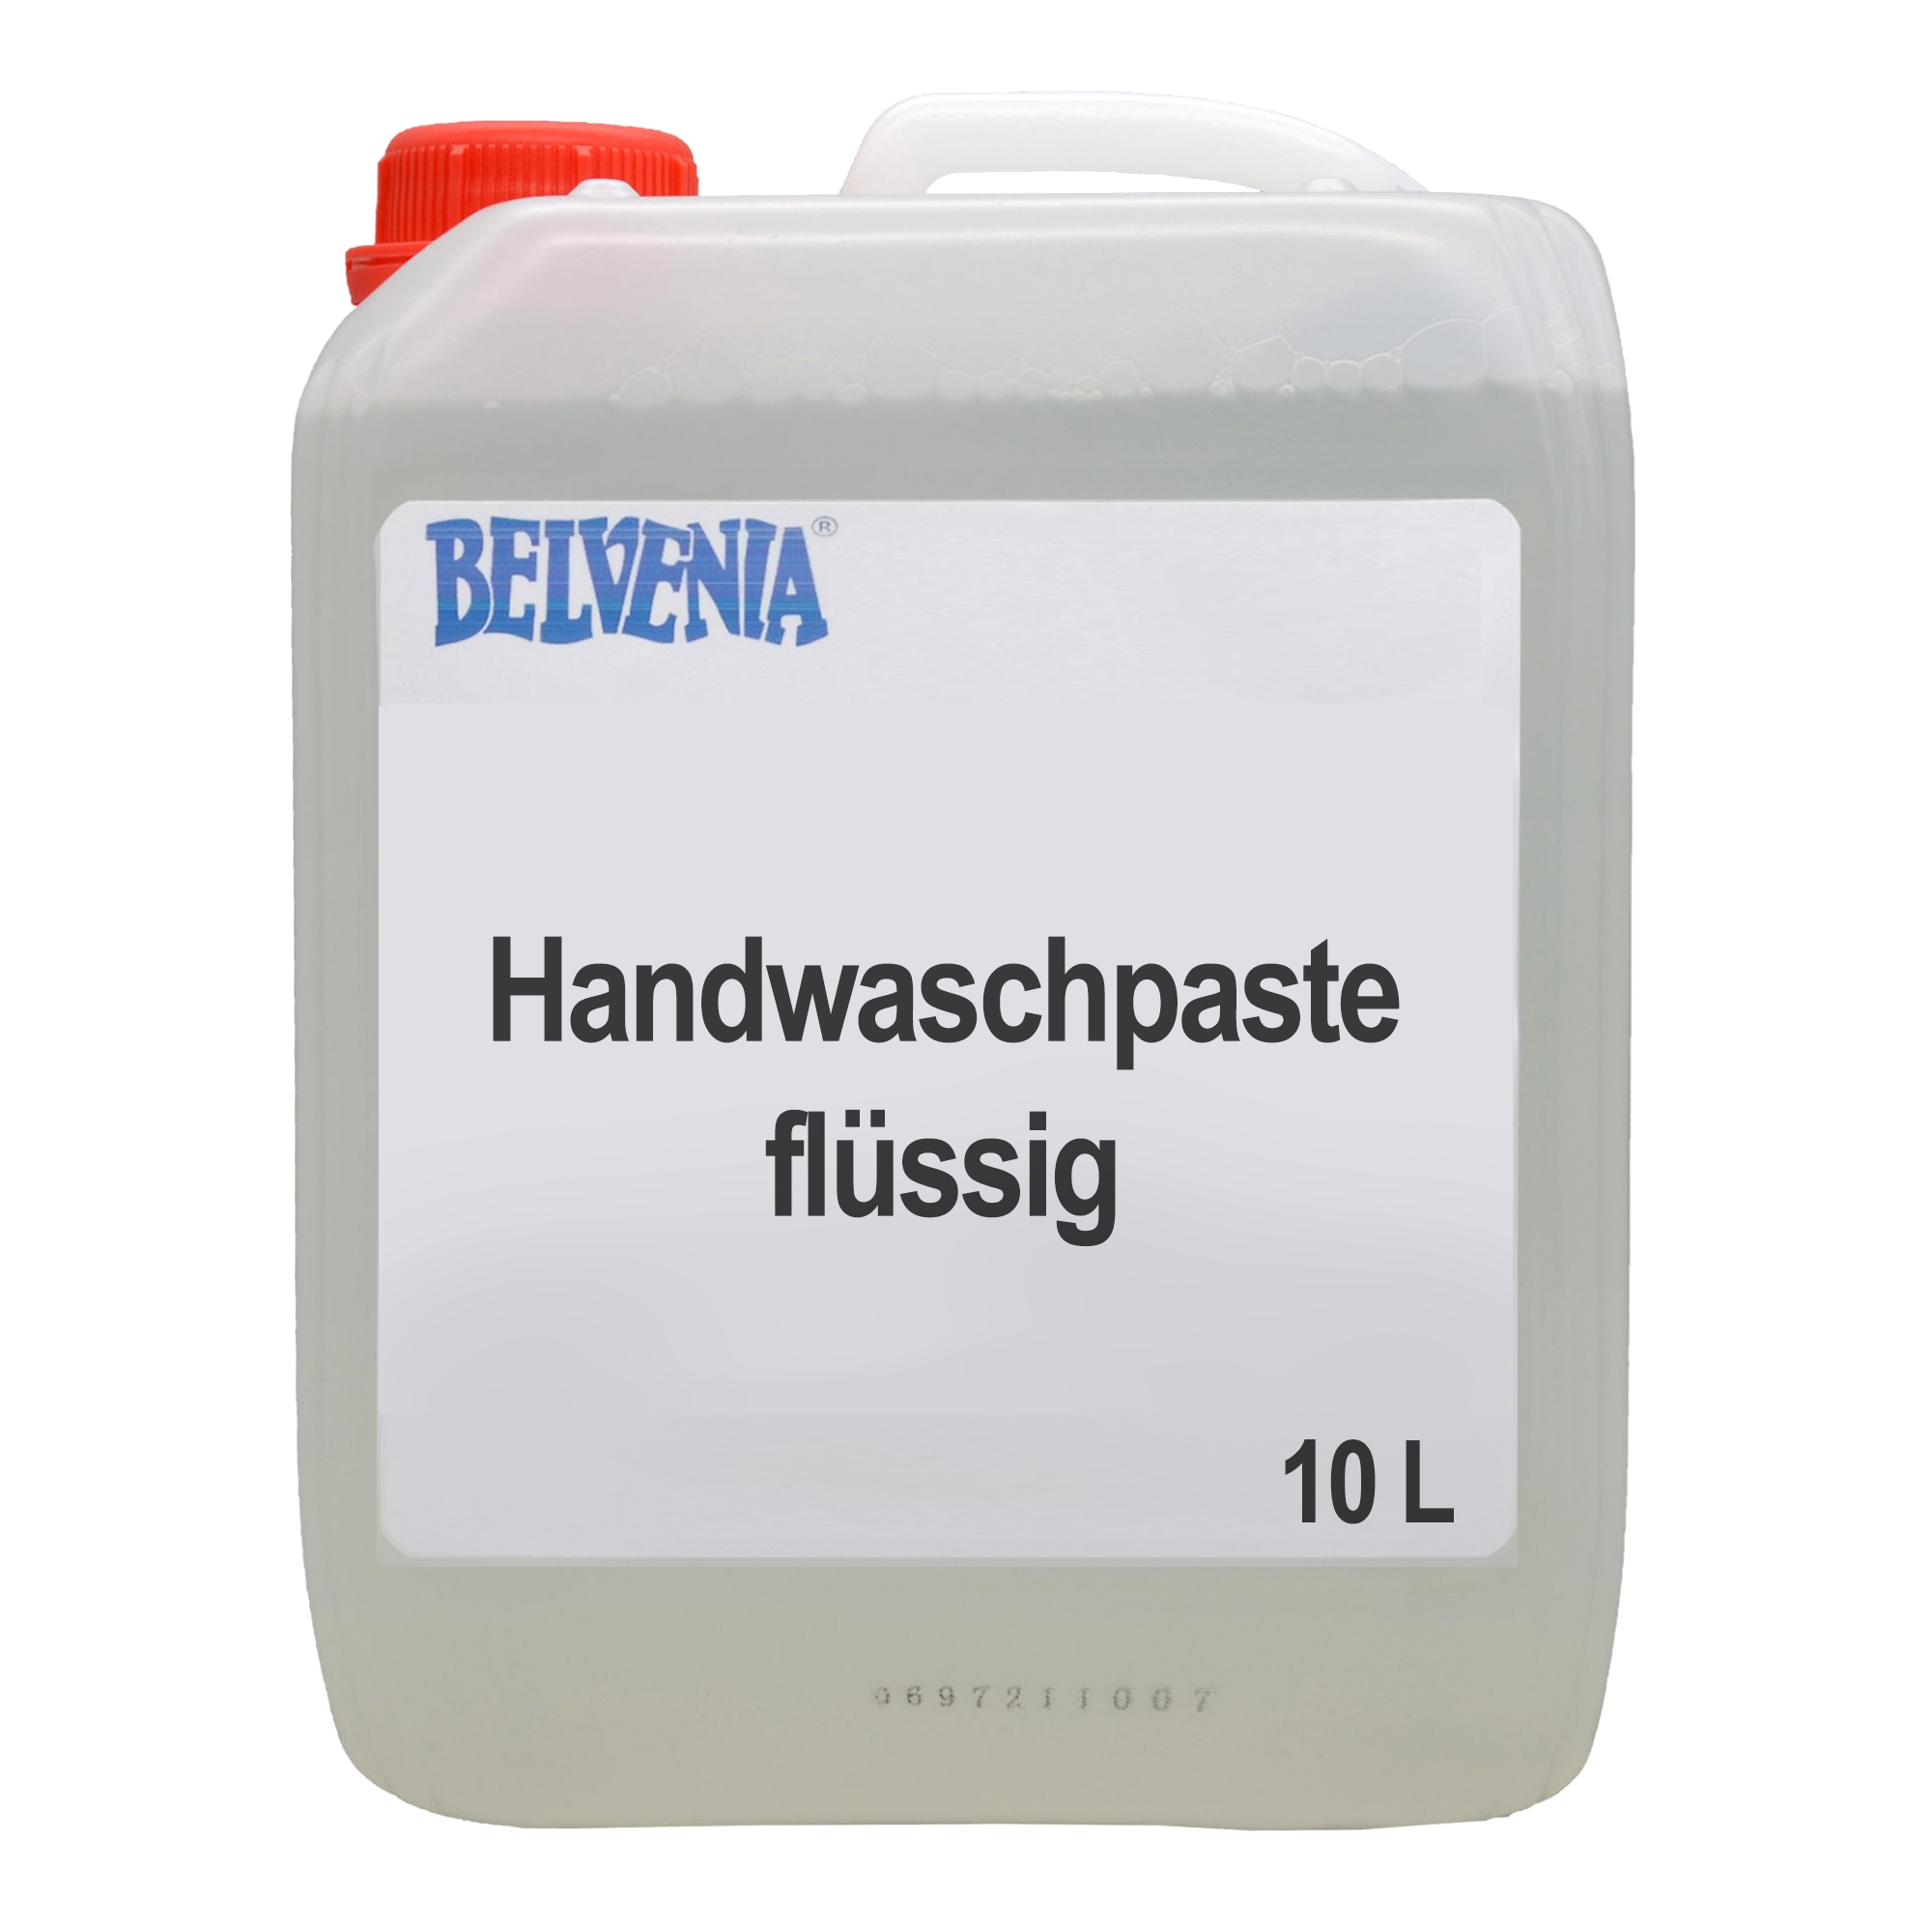 Belvenia Handwaschpaste flüssig